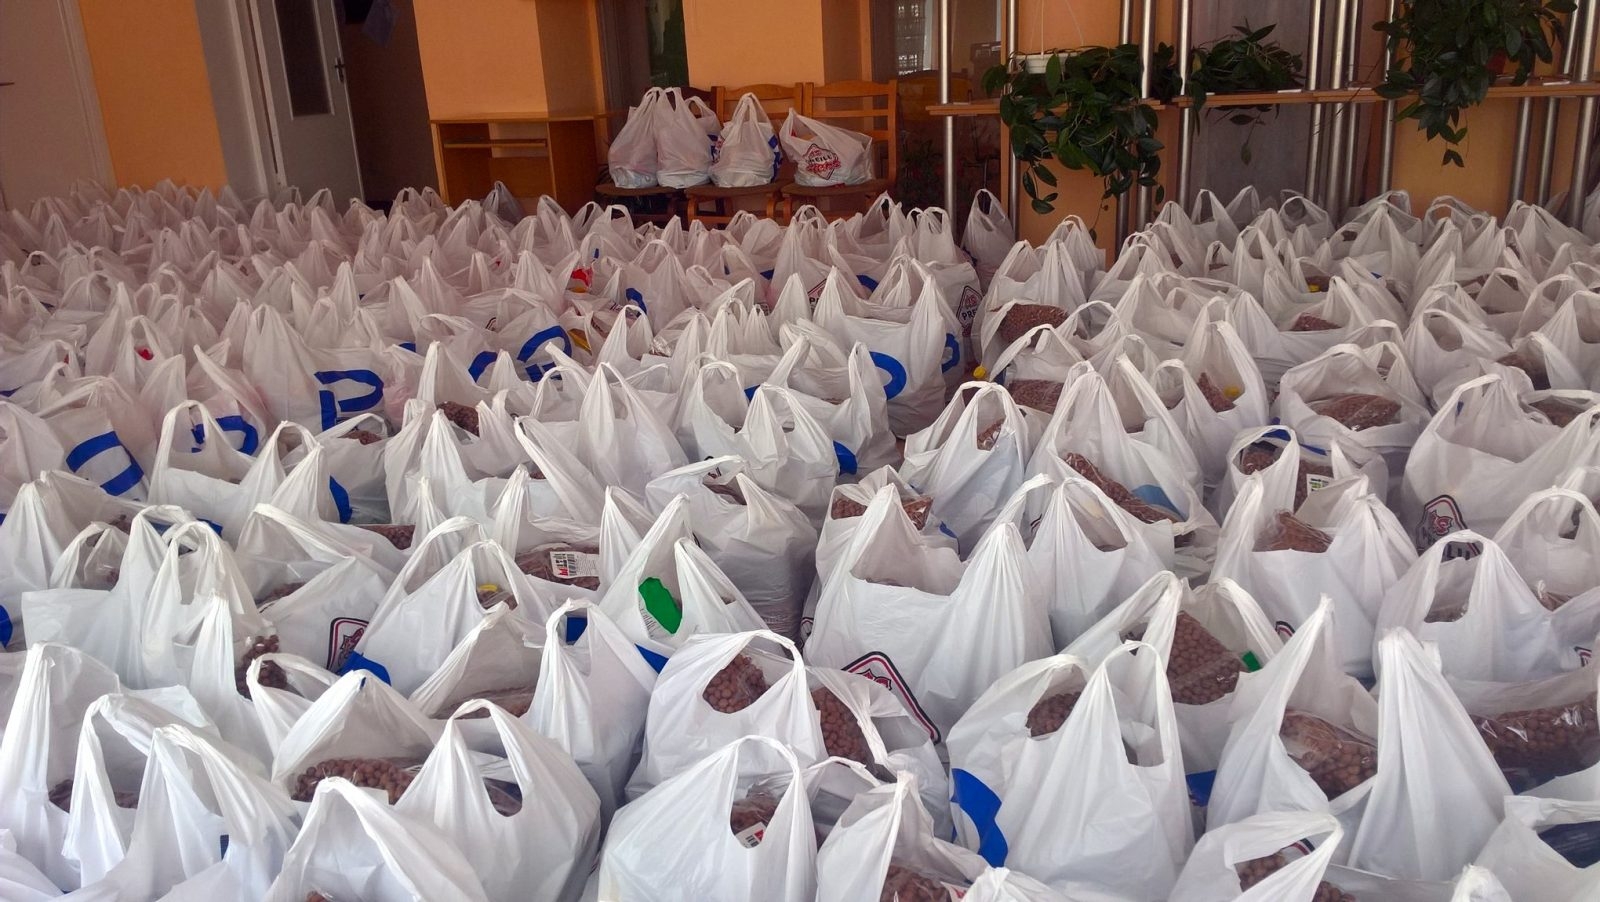 Jau trešo reizi Preiļu novada pašvaldība organizēja pārtikas paku izdali